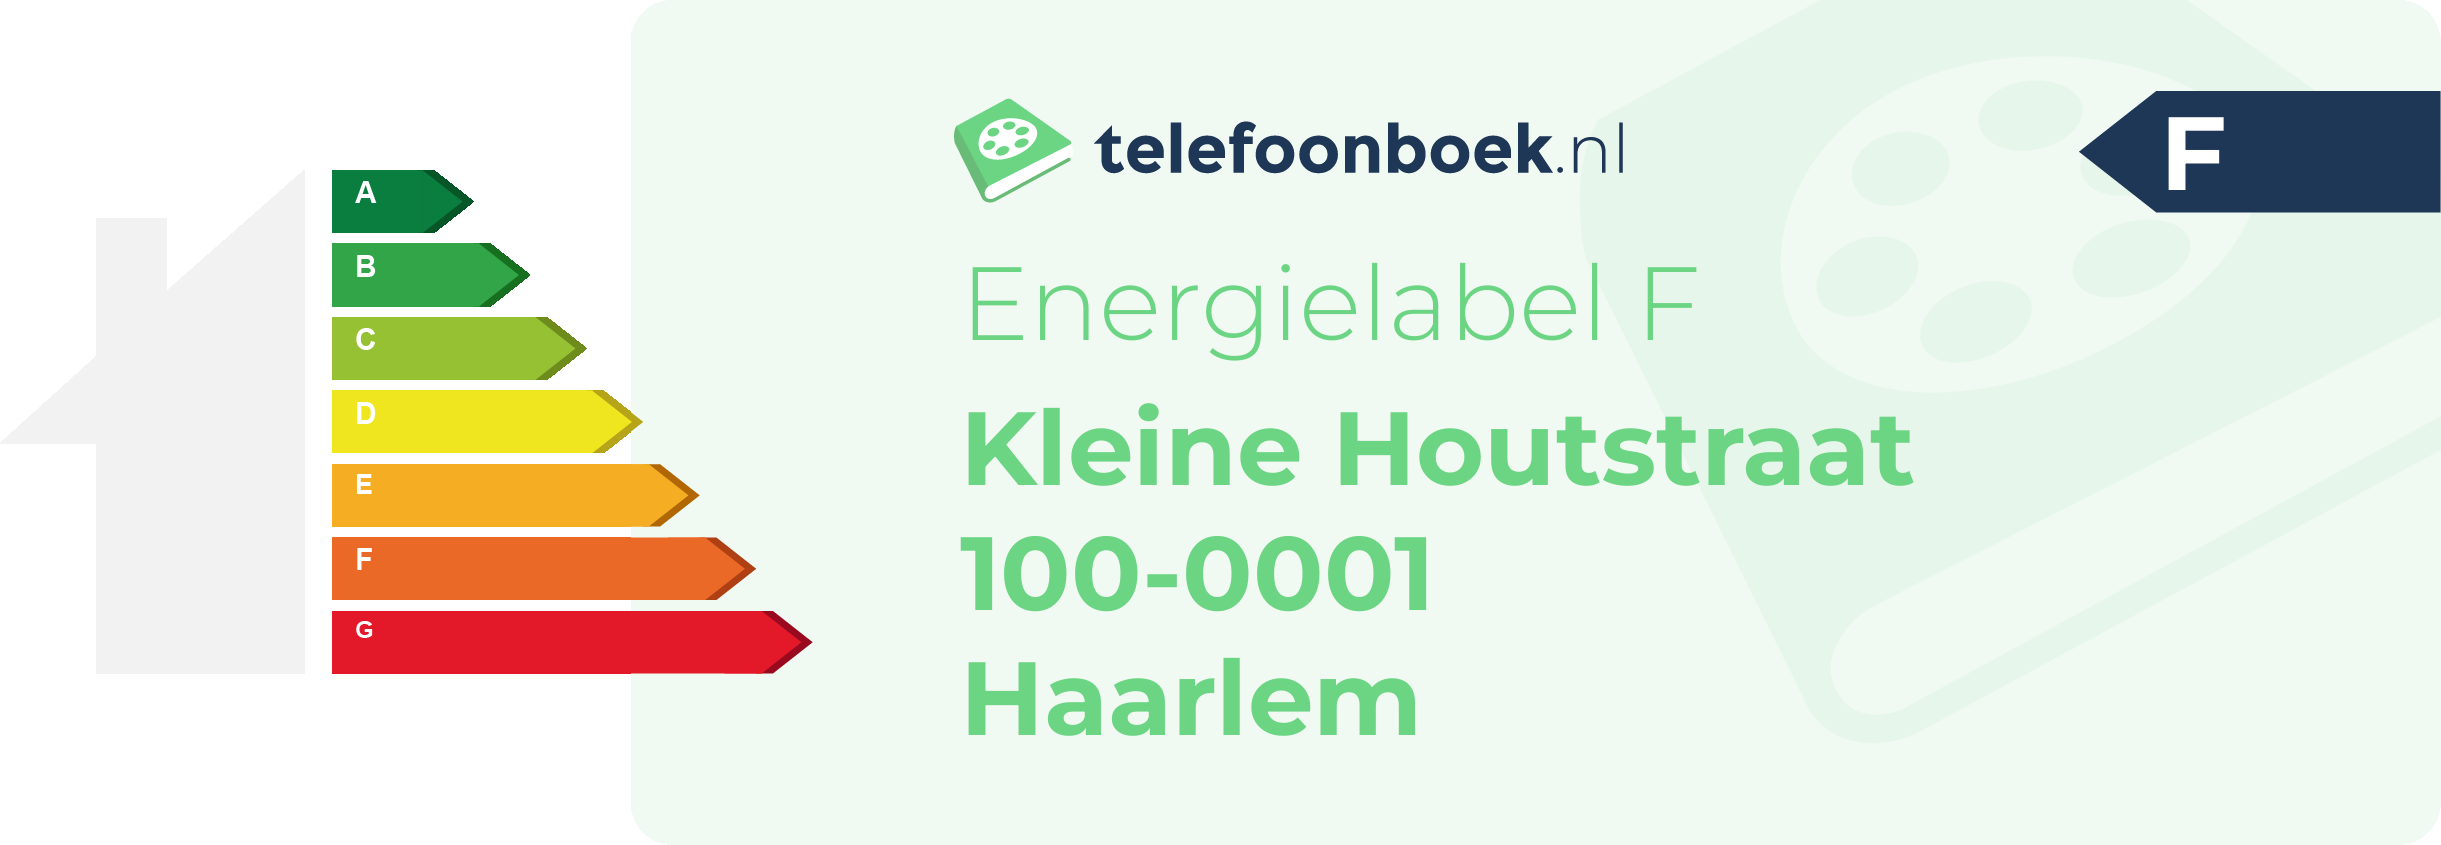 Energielabel Kleine Houtstraat 100-0001 Haarlem